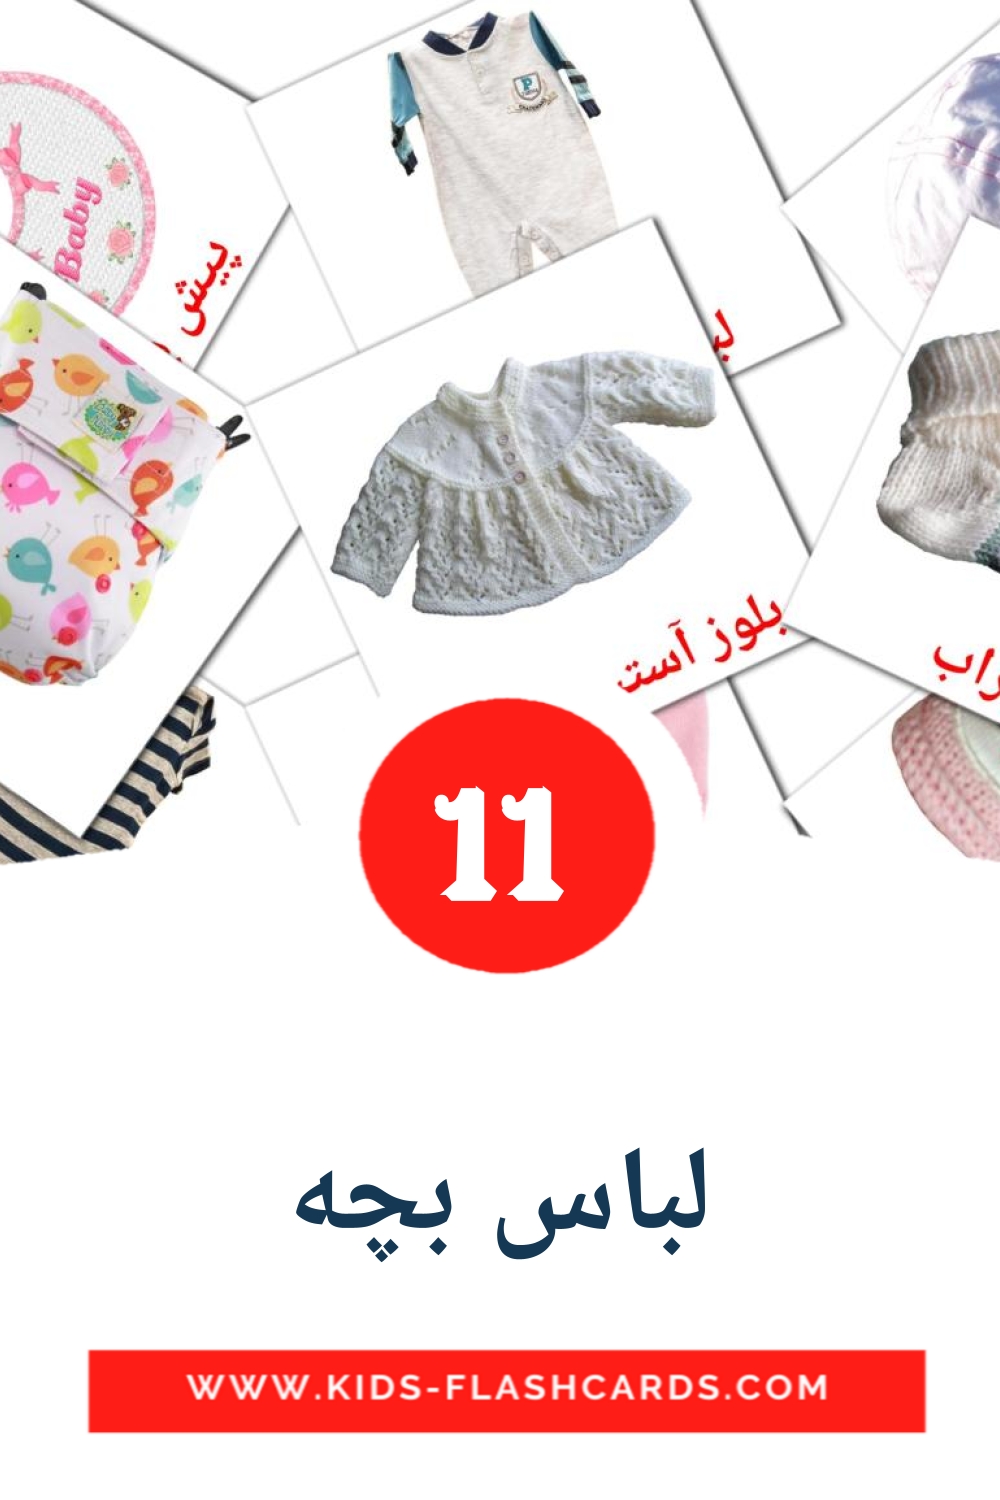 11 carte illustrate di لباس بچه per la scuola materna in persiano